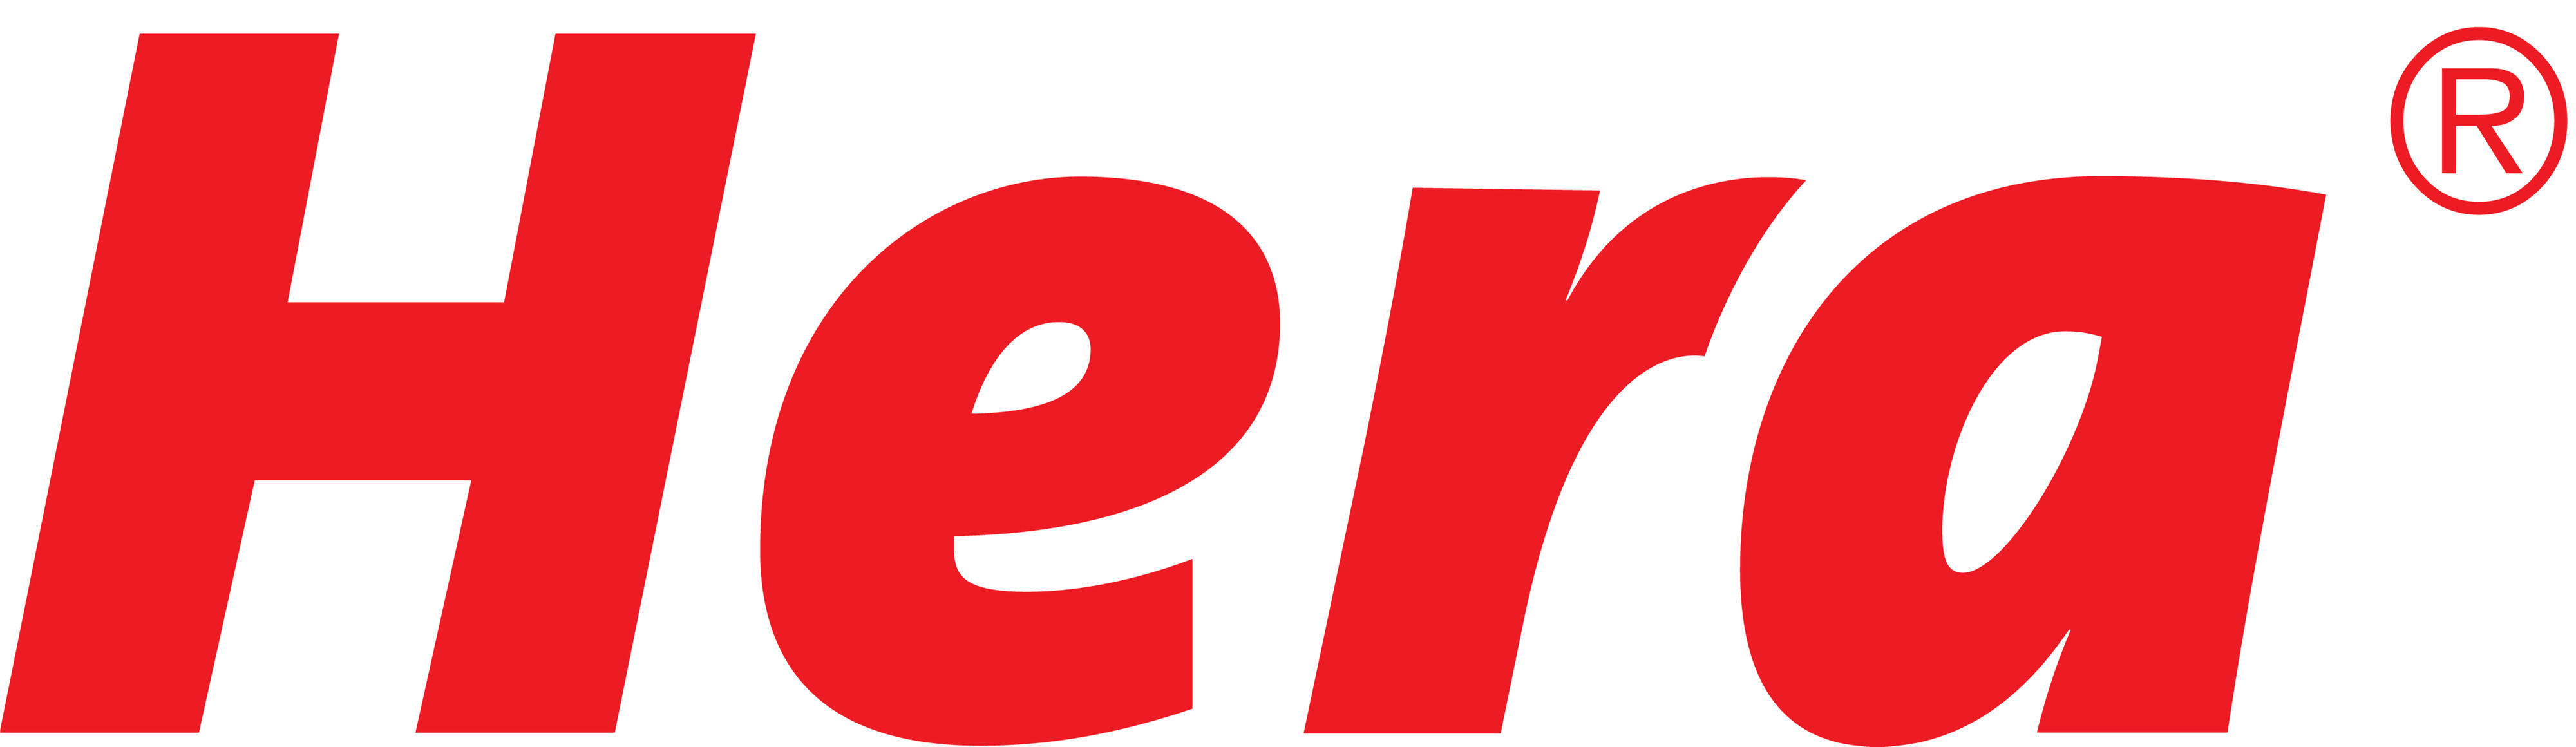 Hera_Logo_2012_groß